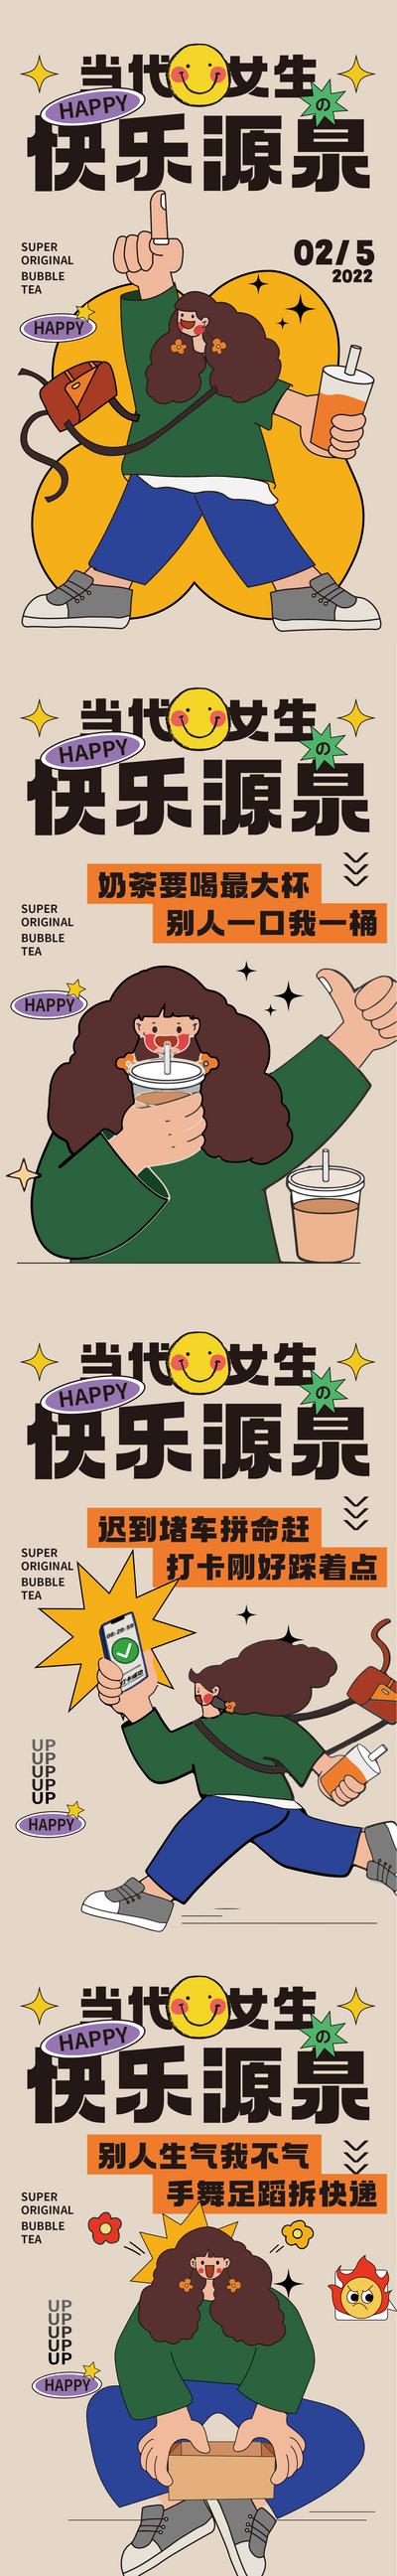 南门网 广告 海报 创意 插画 系列 快乐 源泉 女生 当代